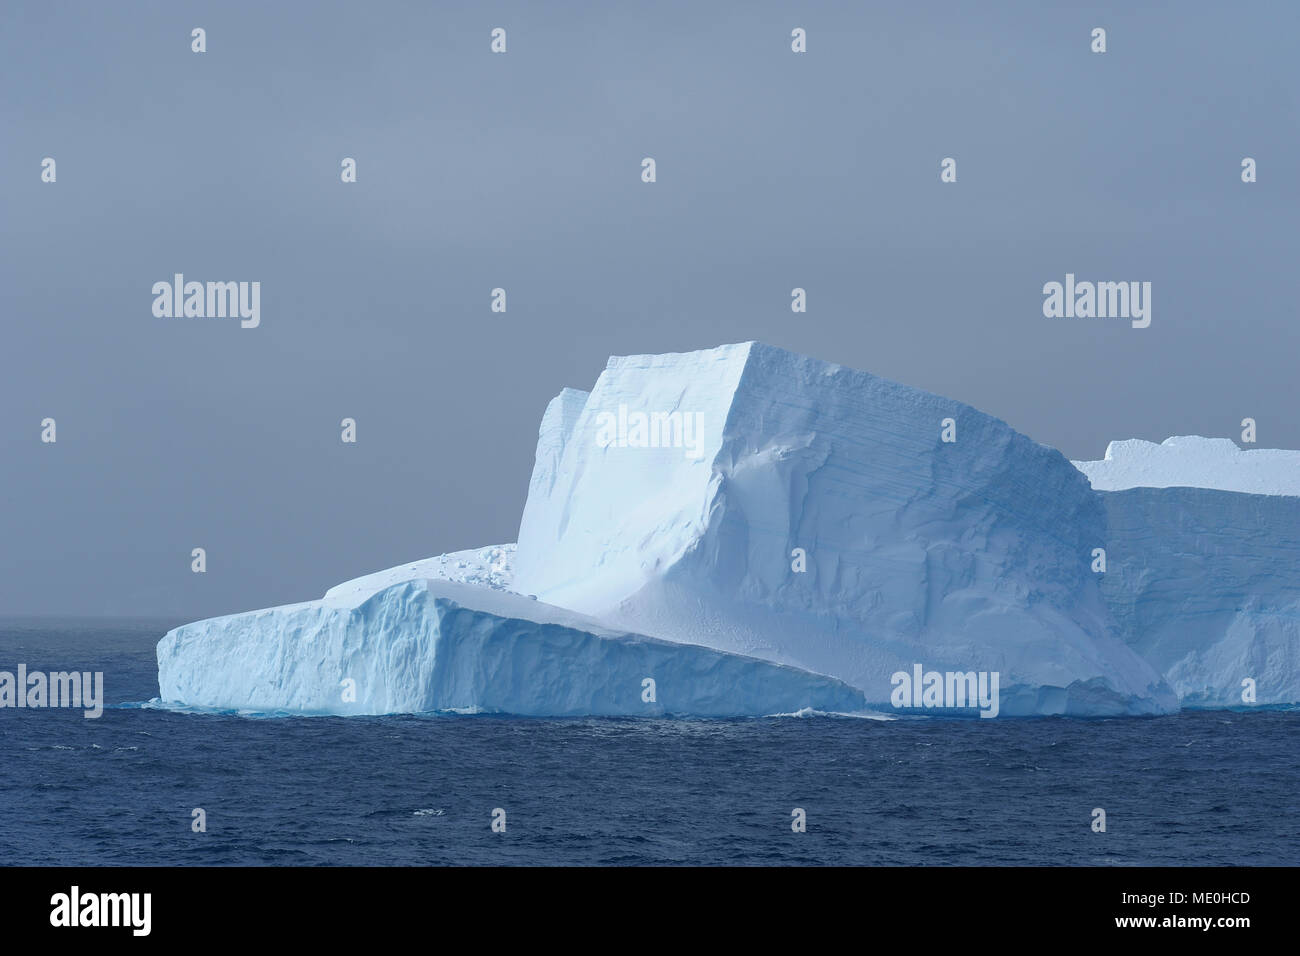 Teil eines Eisbergs reflektiert das Licht an einem bewölkten Tag in der Antarktis Sound an der Antarktischen Halbinsel, Antarktis Stockfoto